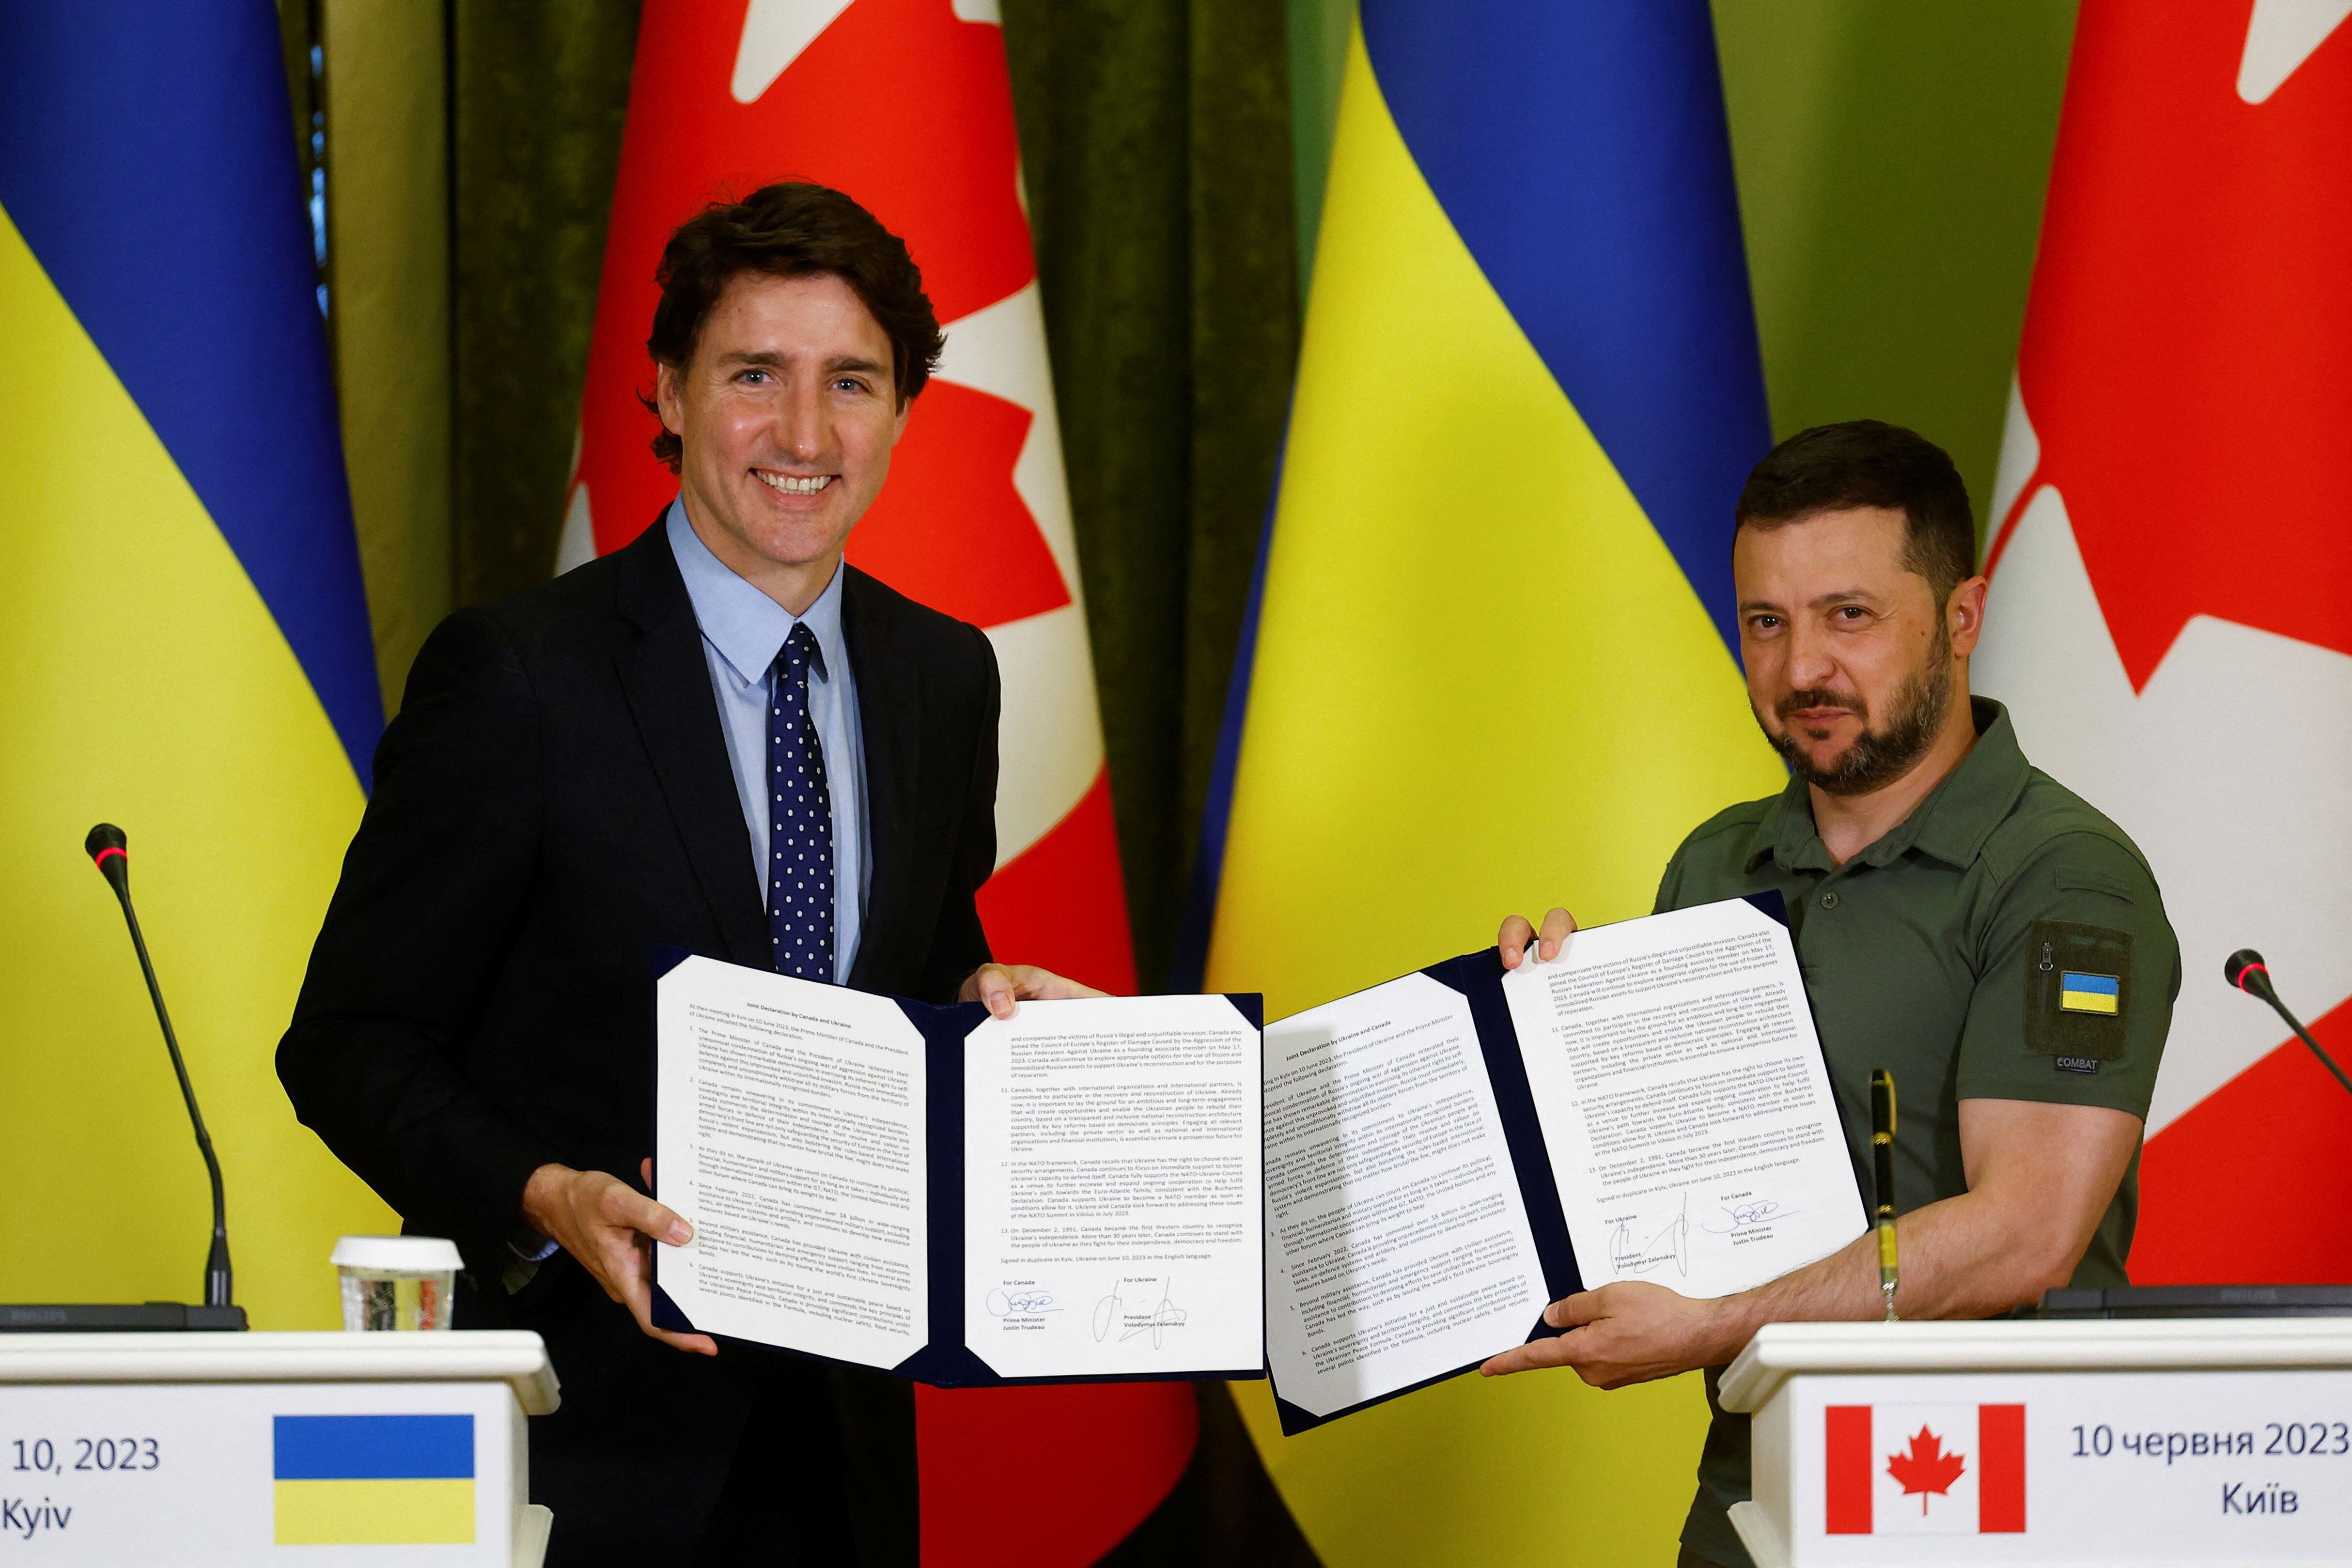 El primer ministro canadiense, Justin Trudeau, y el presidente de Ucrania, Volodymyr Zelenskiy, muestran una declaración conjunta firmada durante una conferencia de prensa, en medio del ataque de Rusia a Ucrania, en Kiev, Ucrania, el 10 de junio de 2023. REUTERS/Valentyn Ogirenko